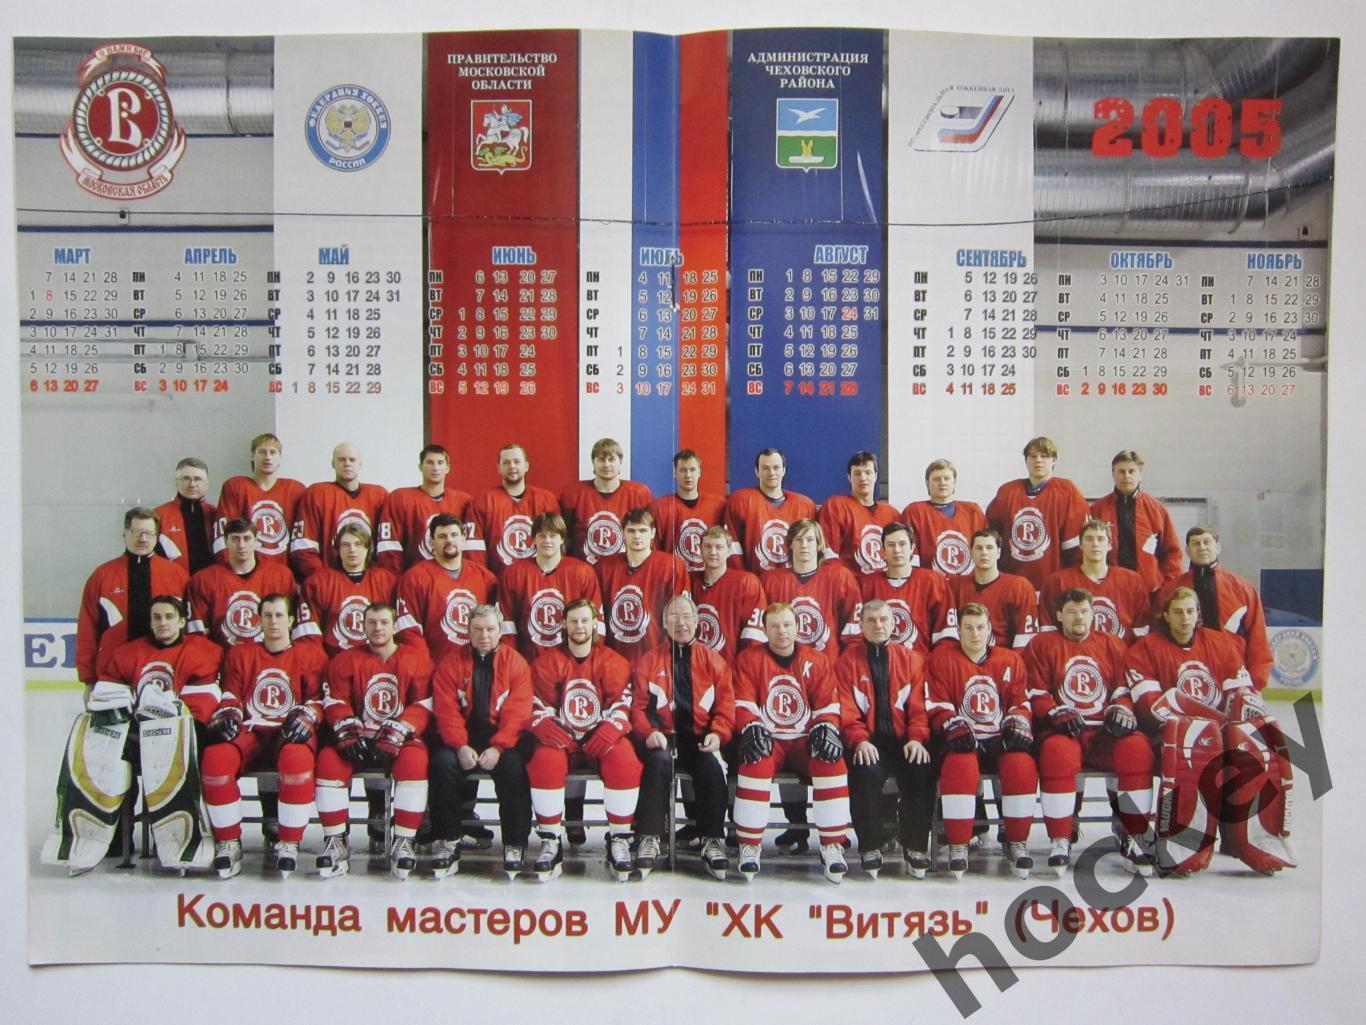 Витязь Чехов - Мечел Челябинск 24,25.03.2005. Постер ХК Витязь - 2004/05. 1